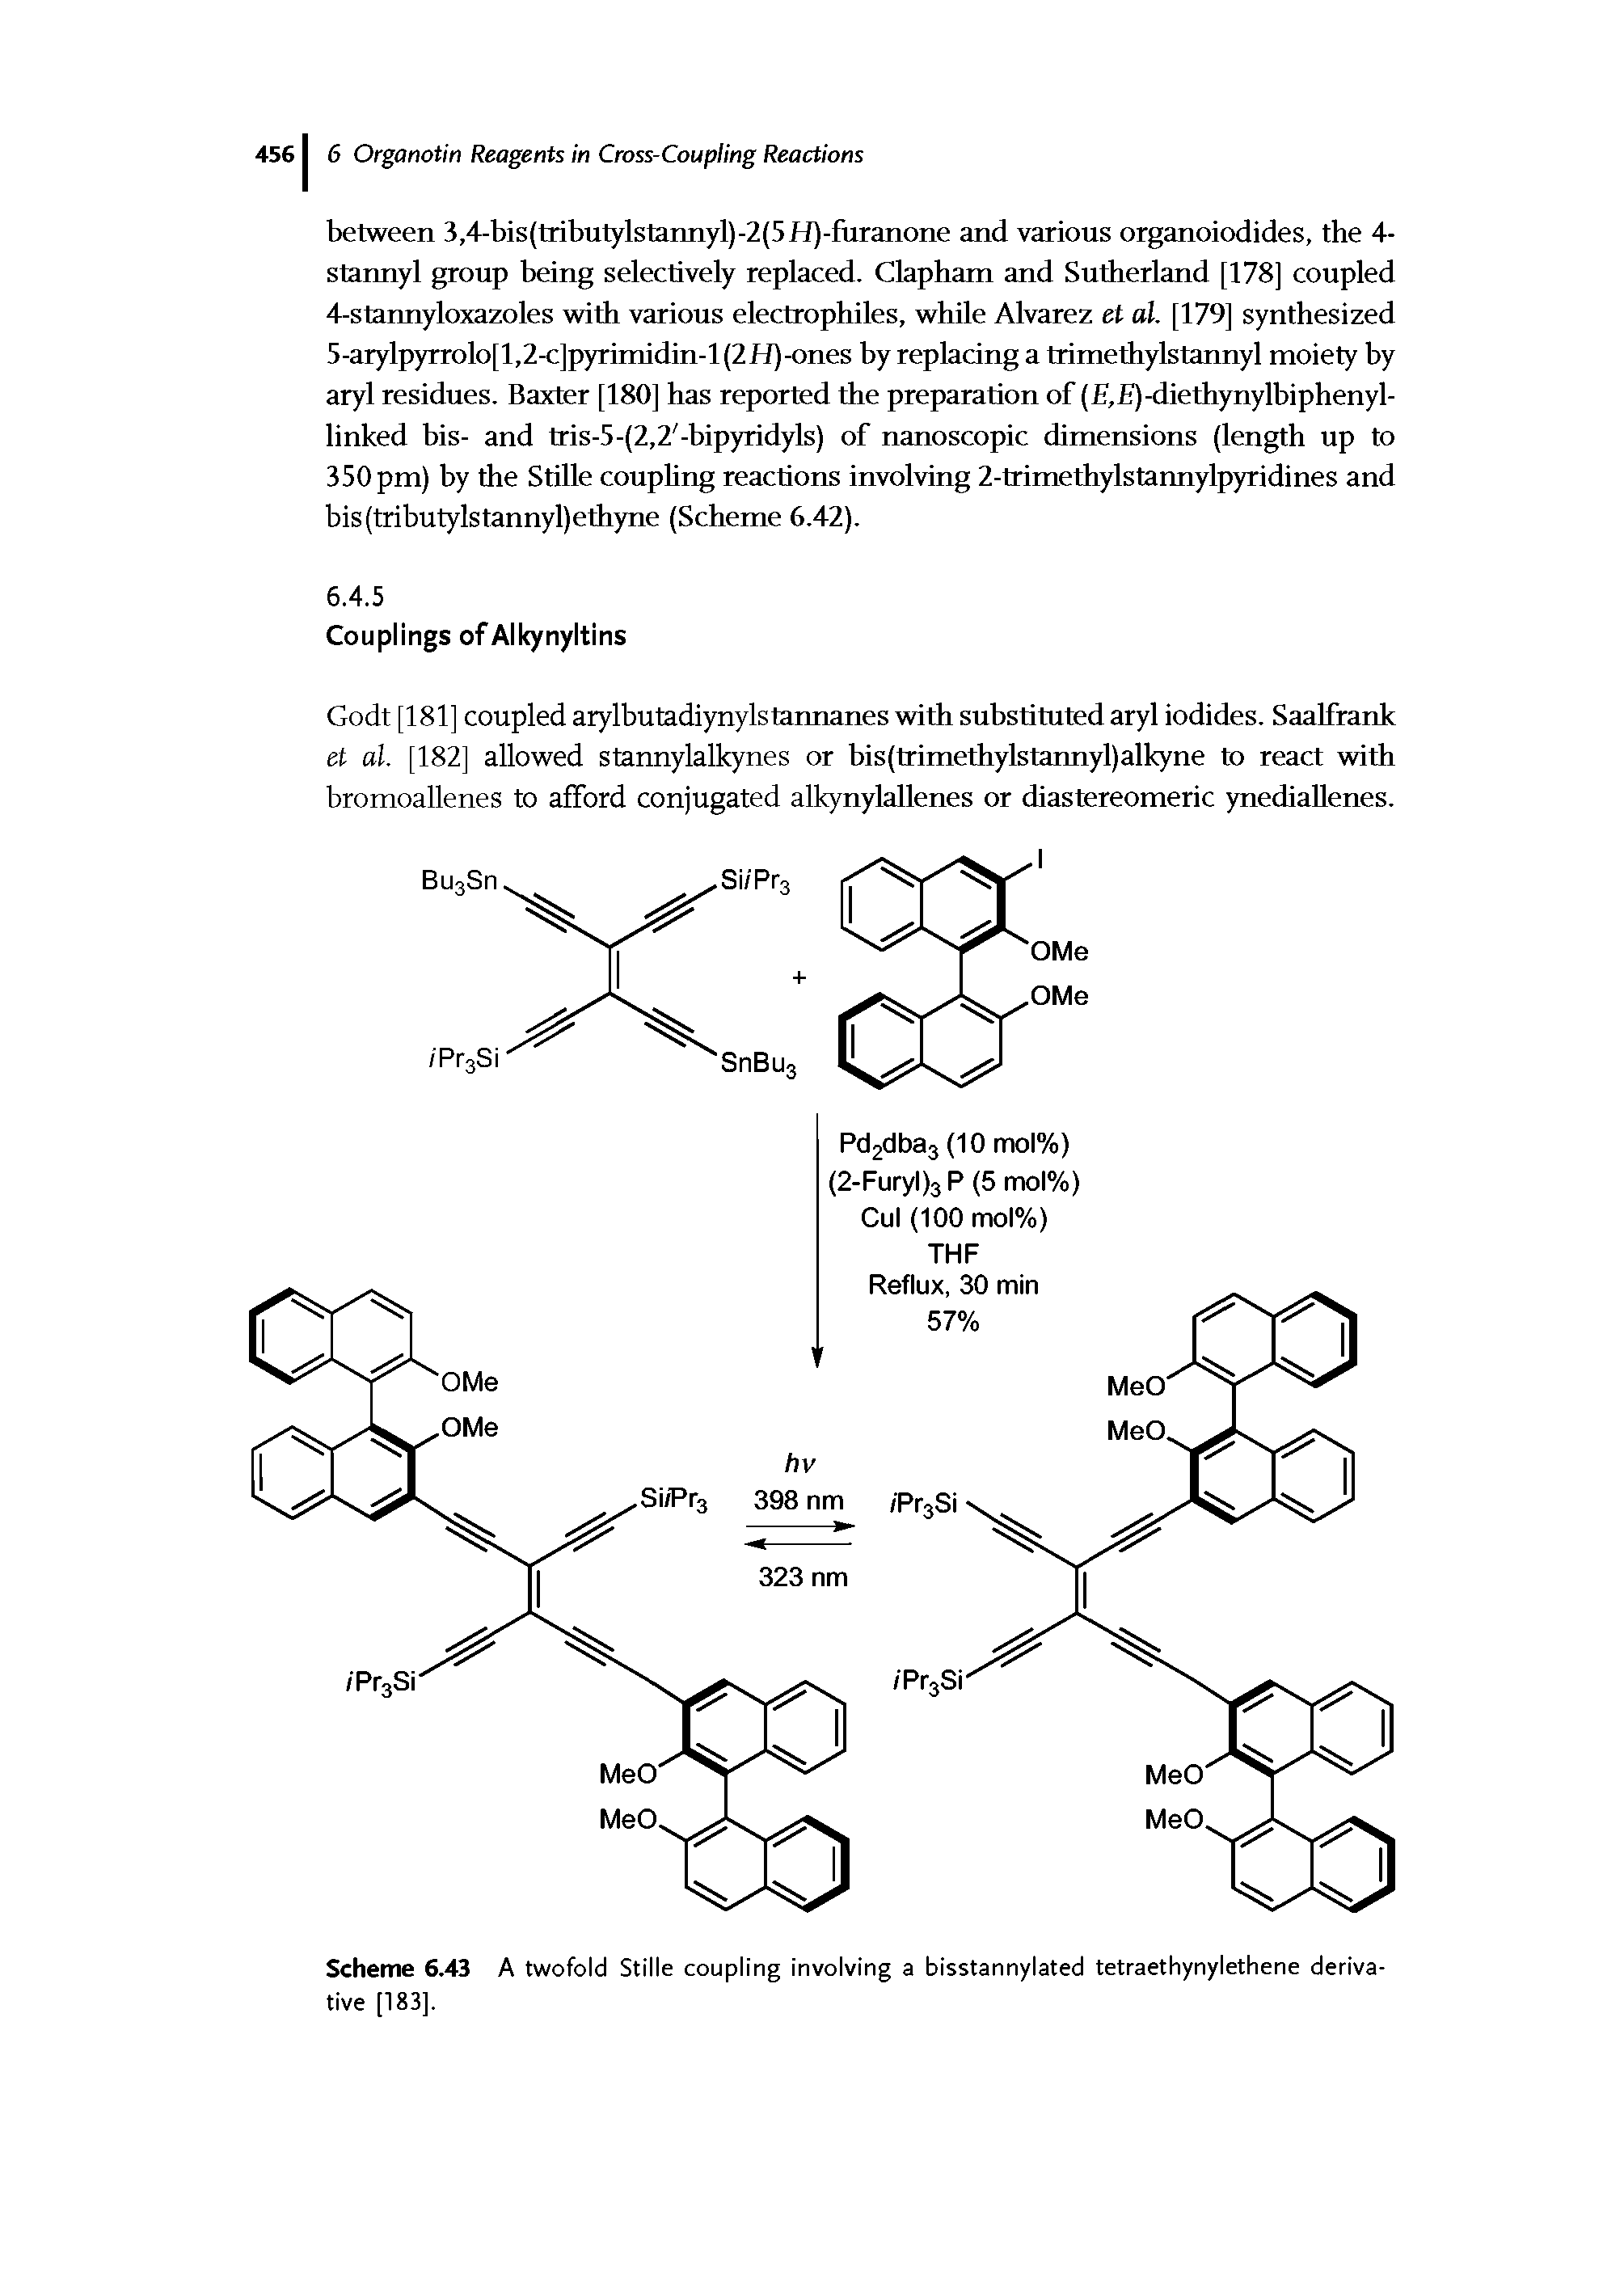 Scheme 6.43 A twofold Stille coupling involving a bisstannylated tetraethynylethene derivative [183].